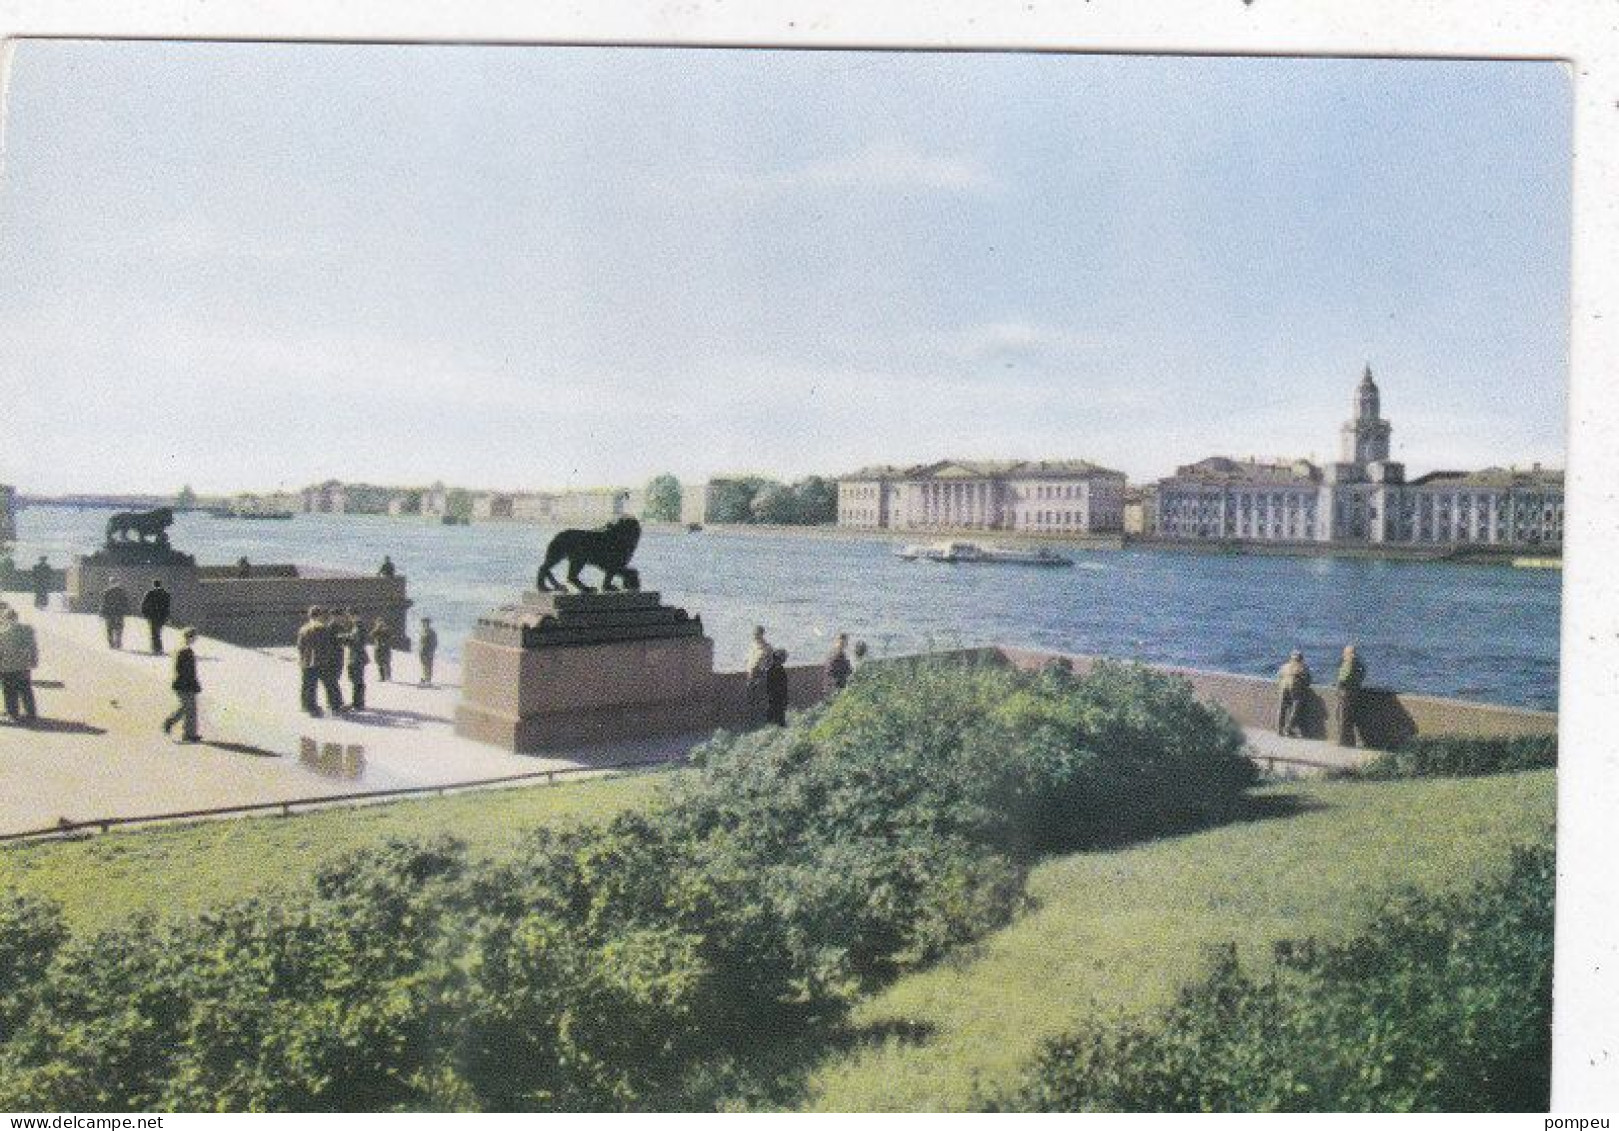 QT - Lot 20 cartes  - Russia - LENINGRADO (São Petersburgo) - neuf